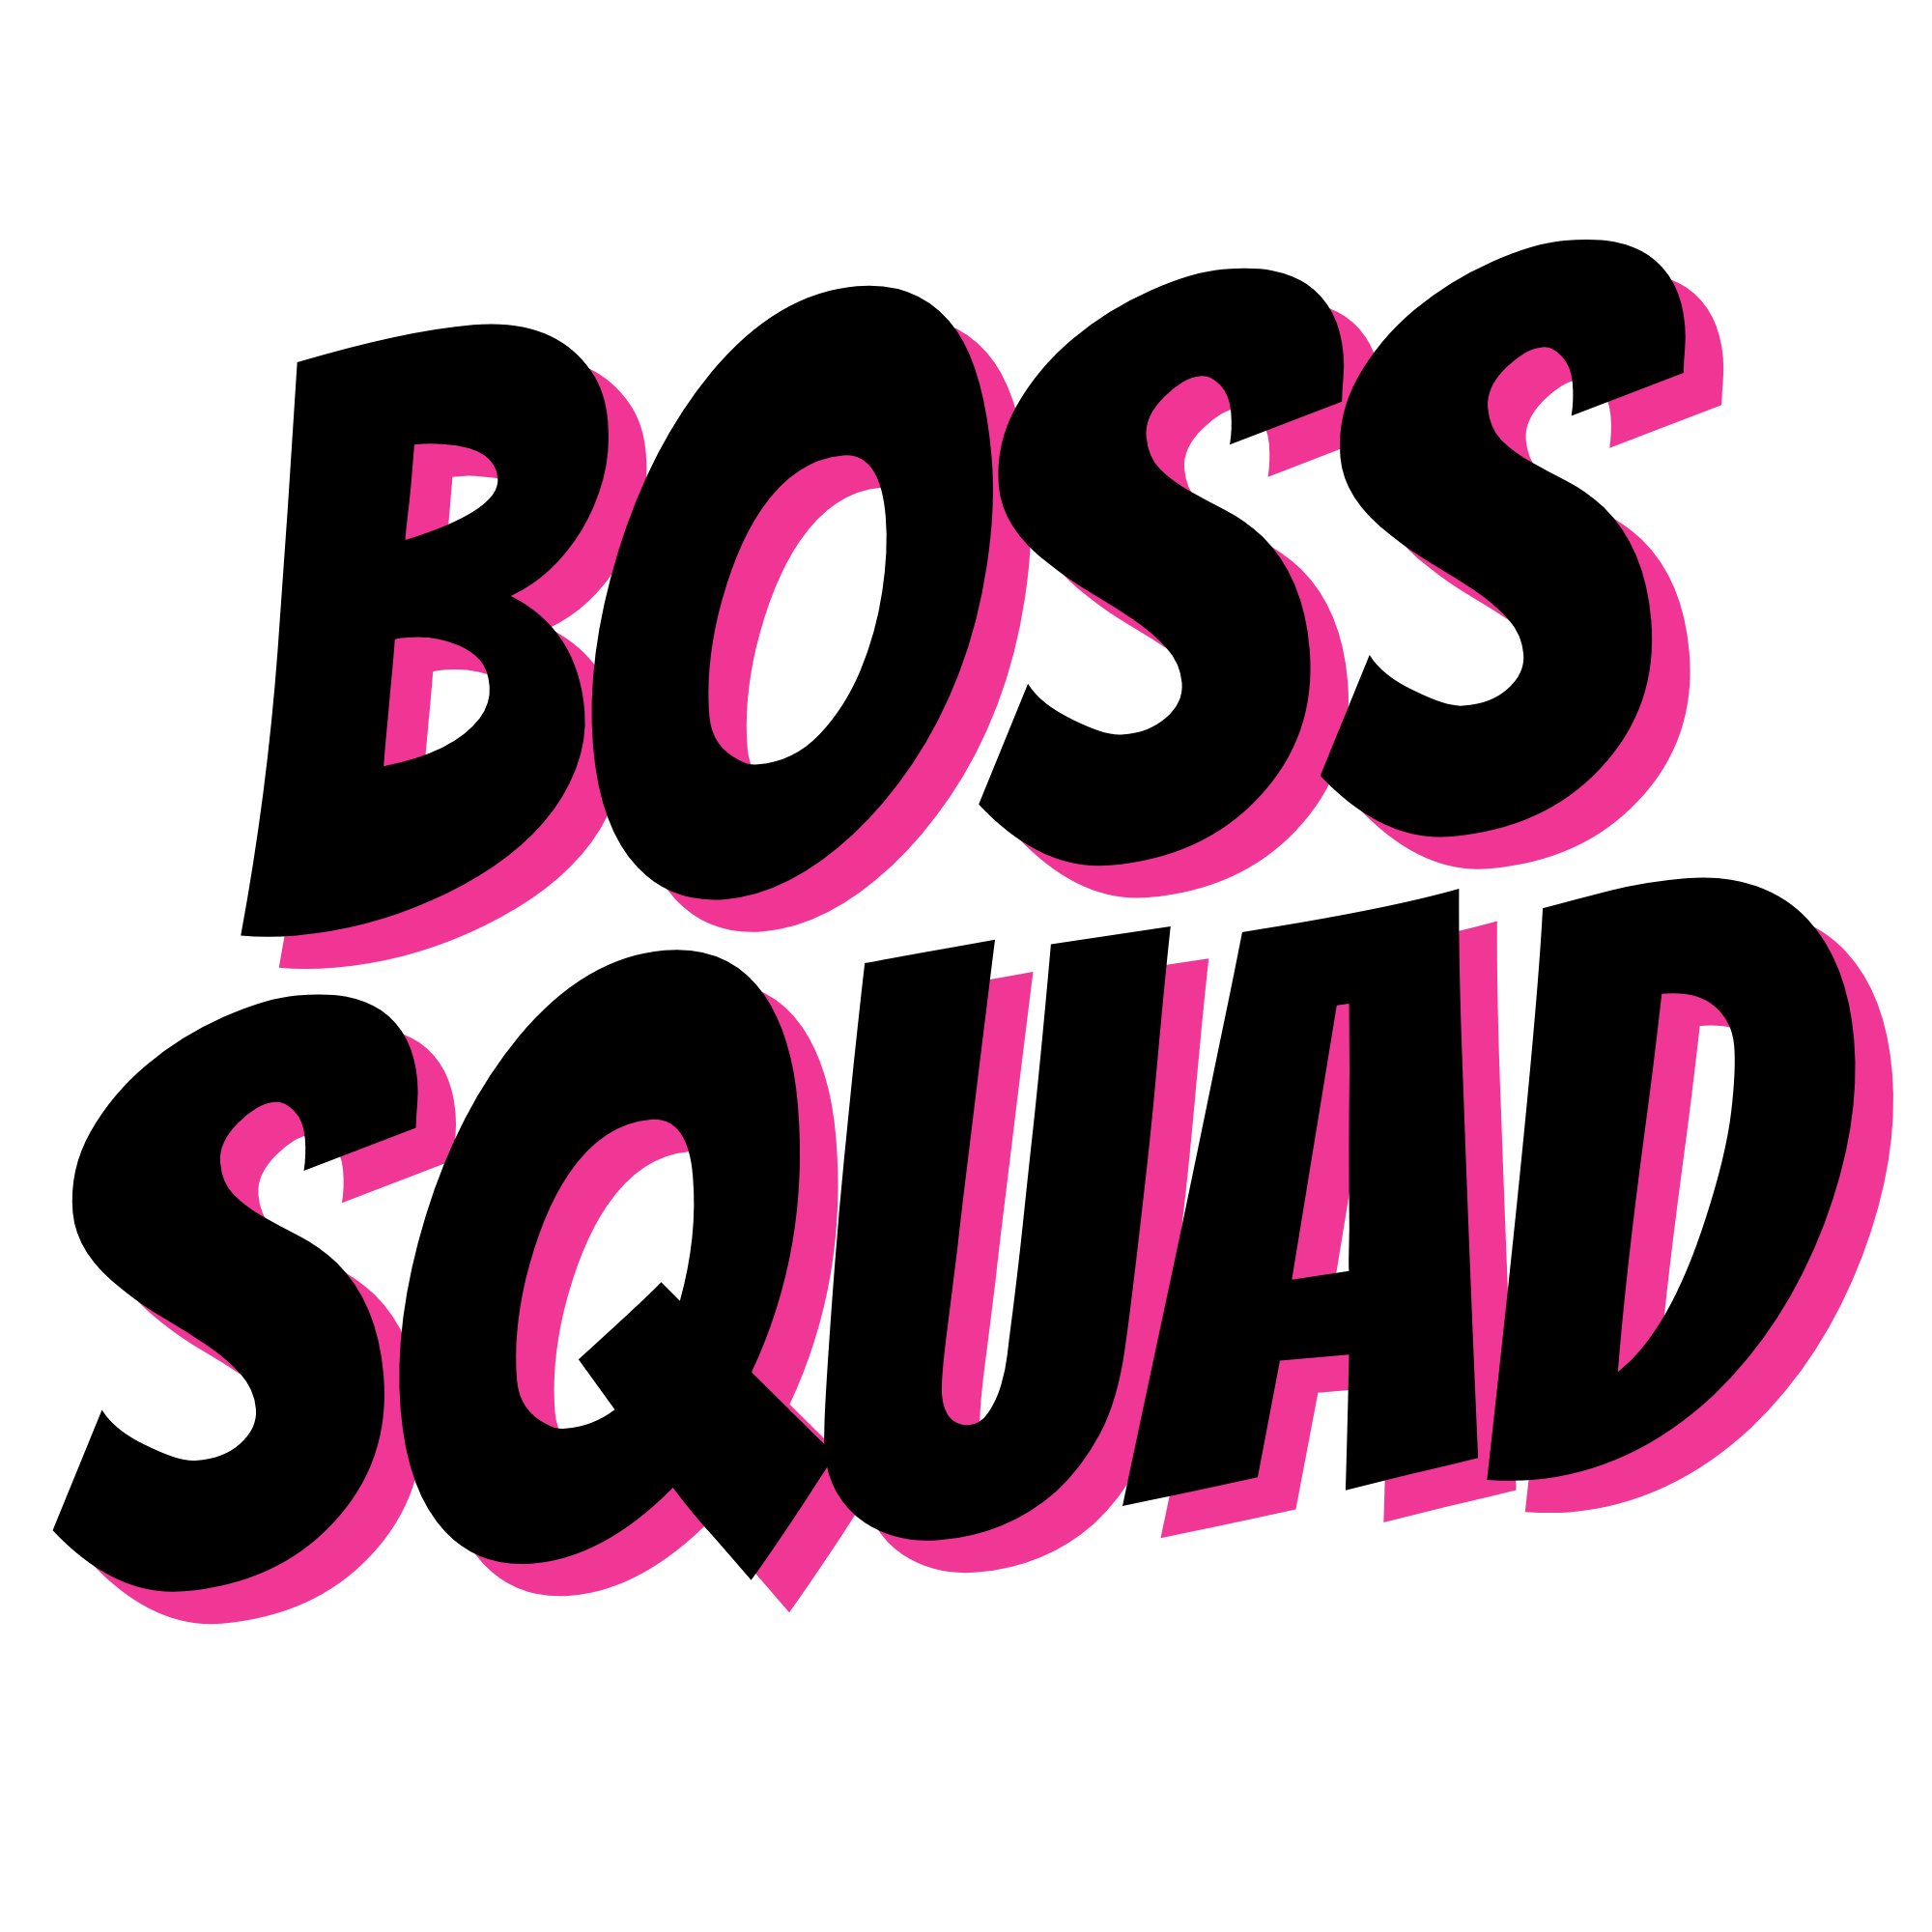 Boss Squad